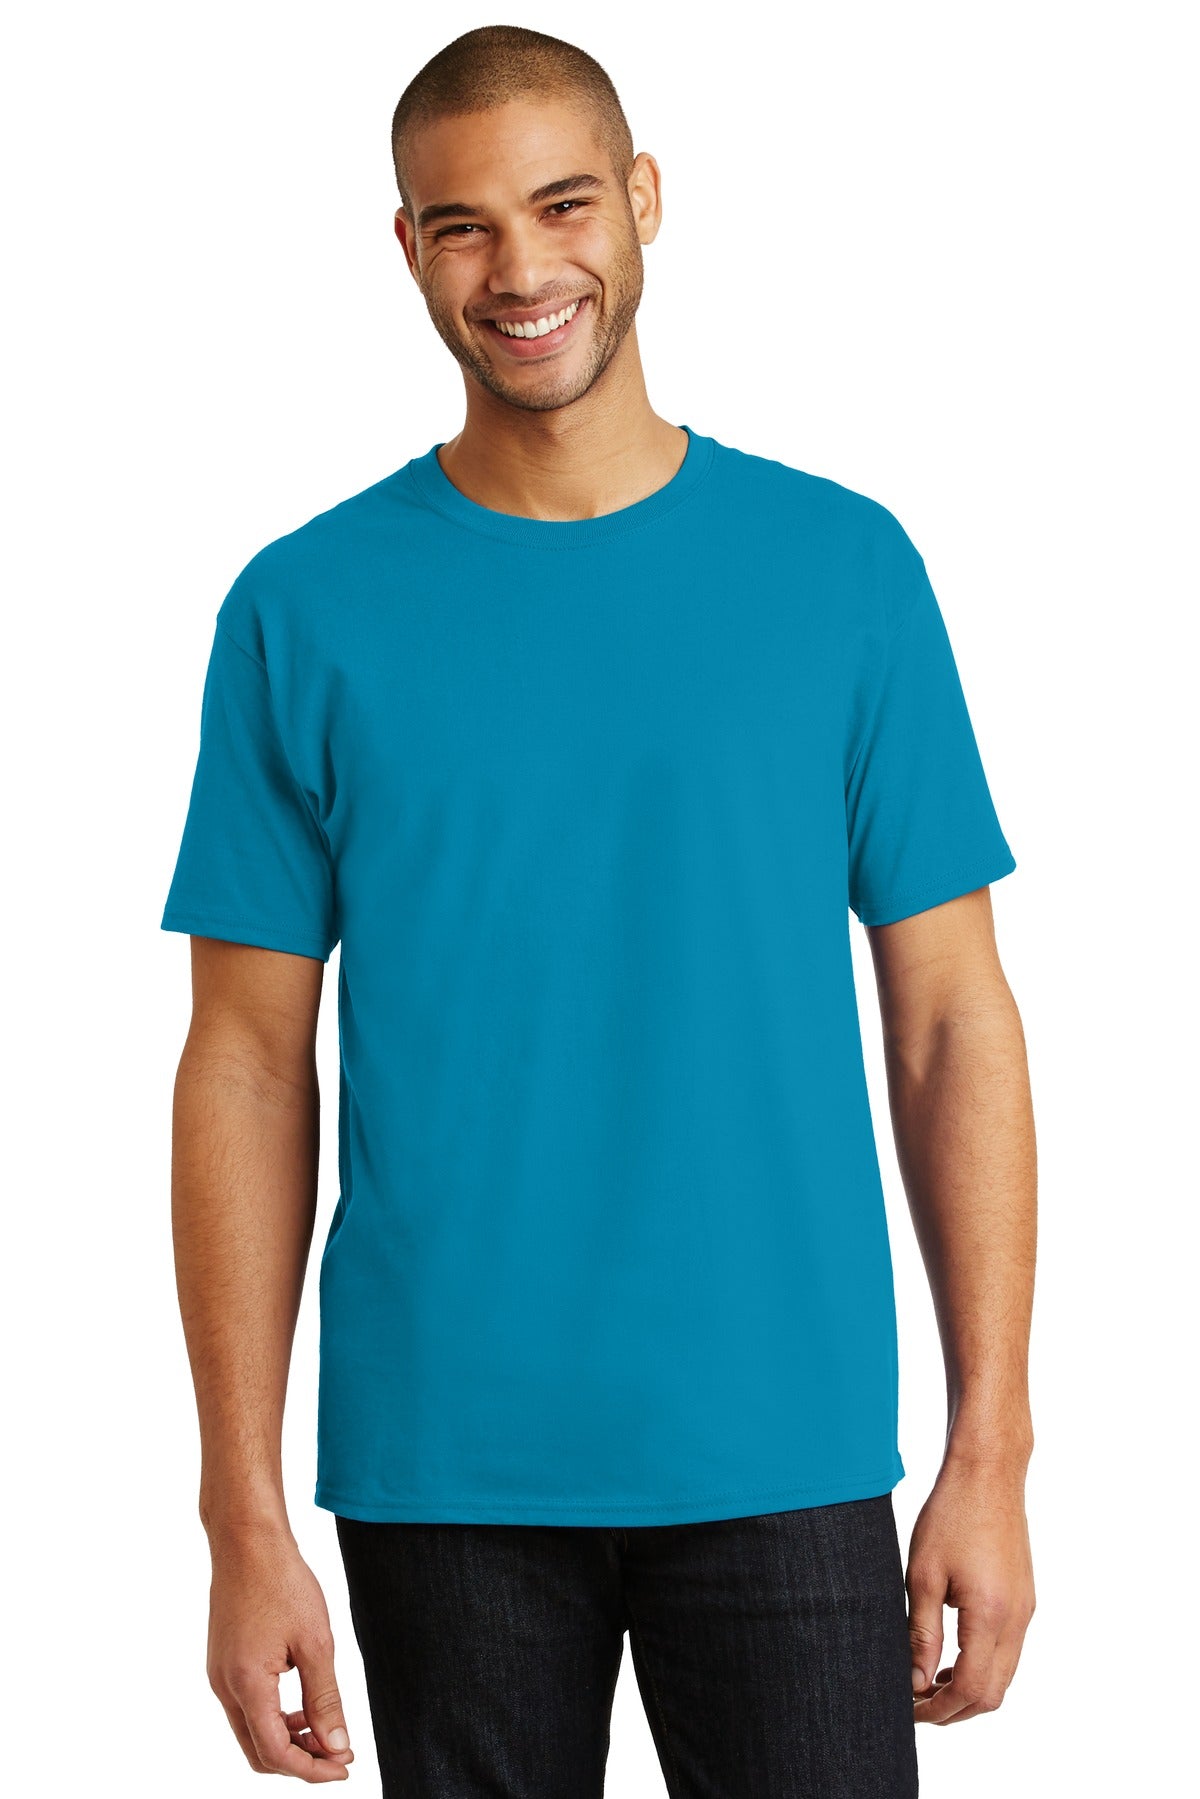 Hanes® - Authentic 100% Cotton T-Shirt. 5250 [Teal] - DFW Impression